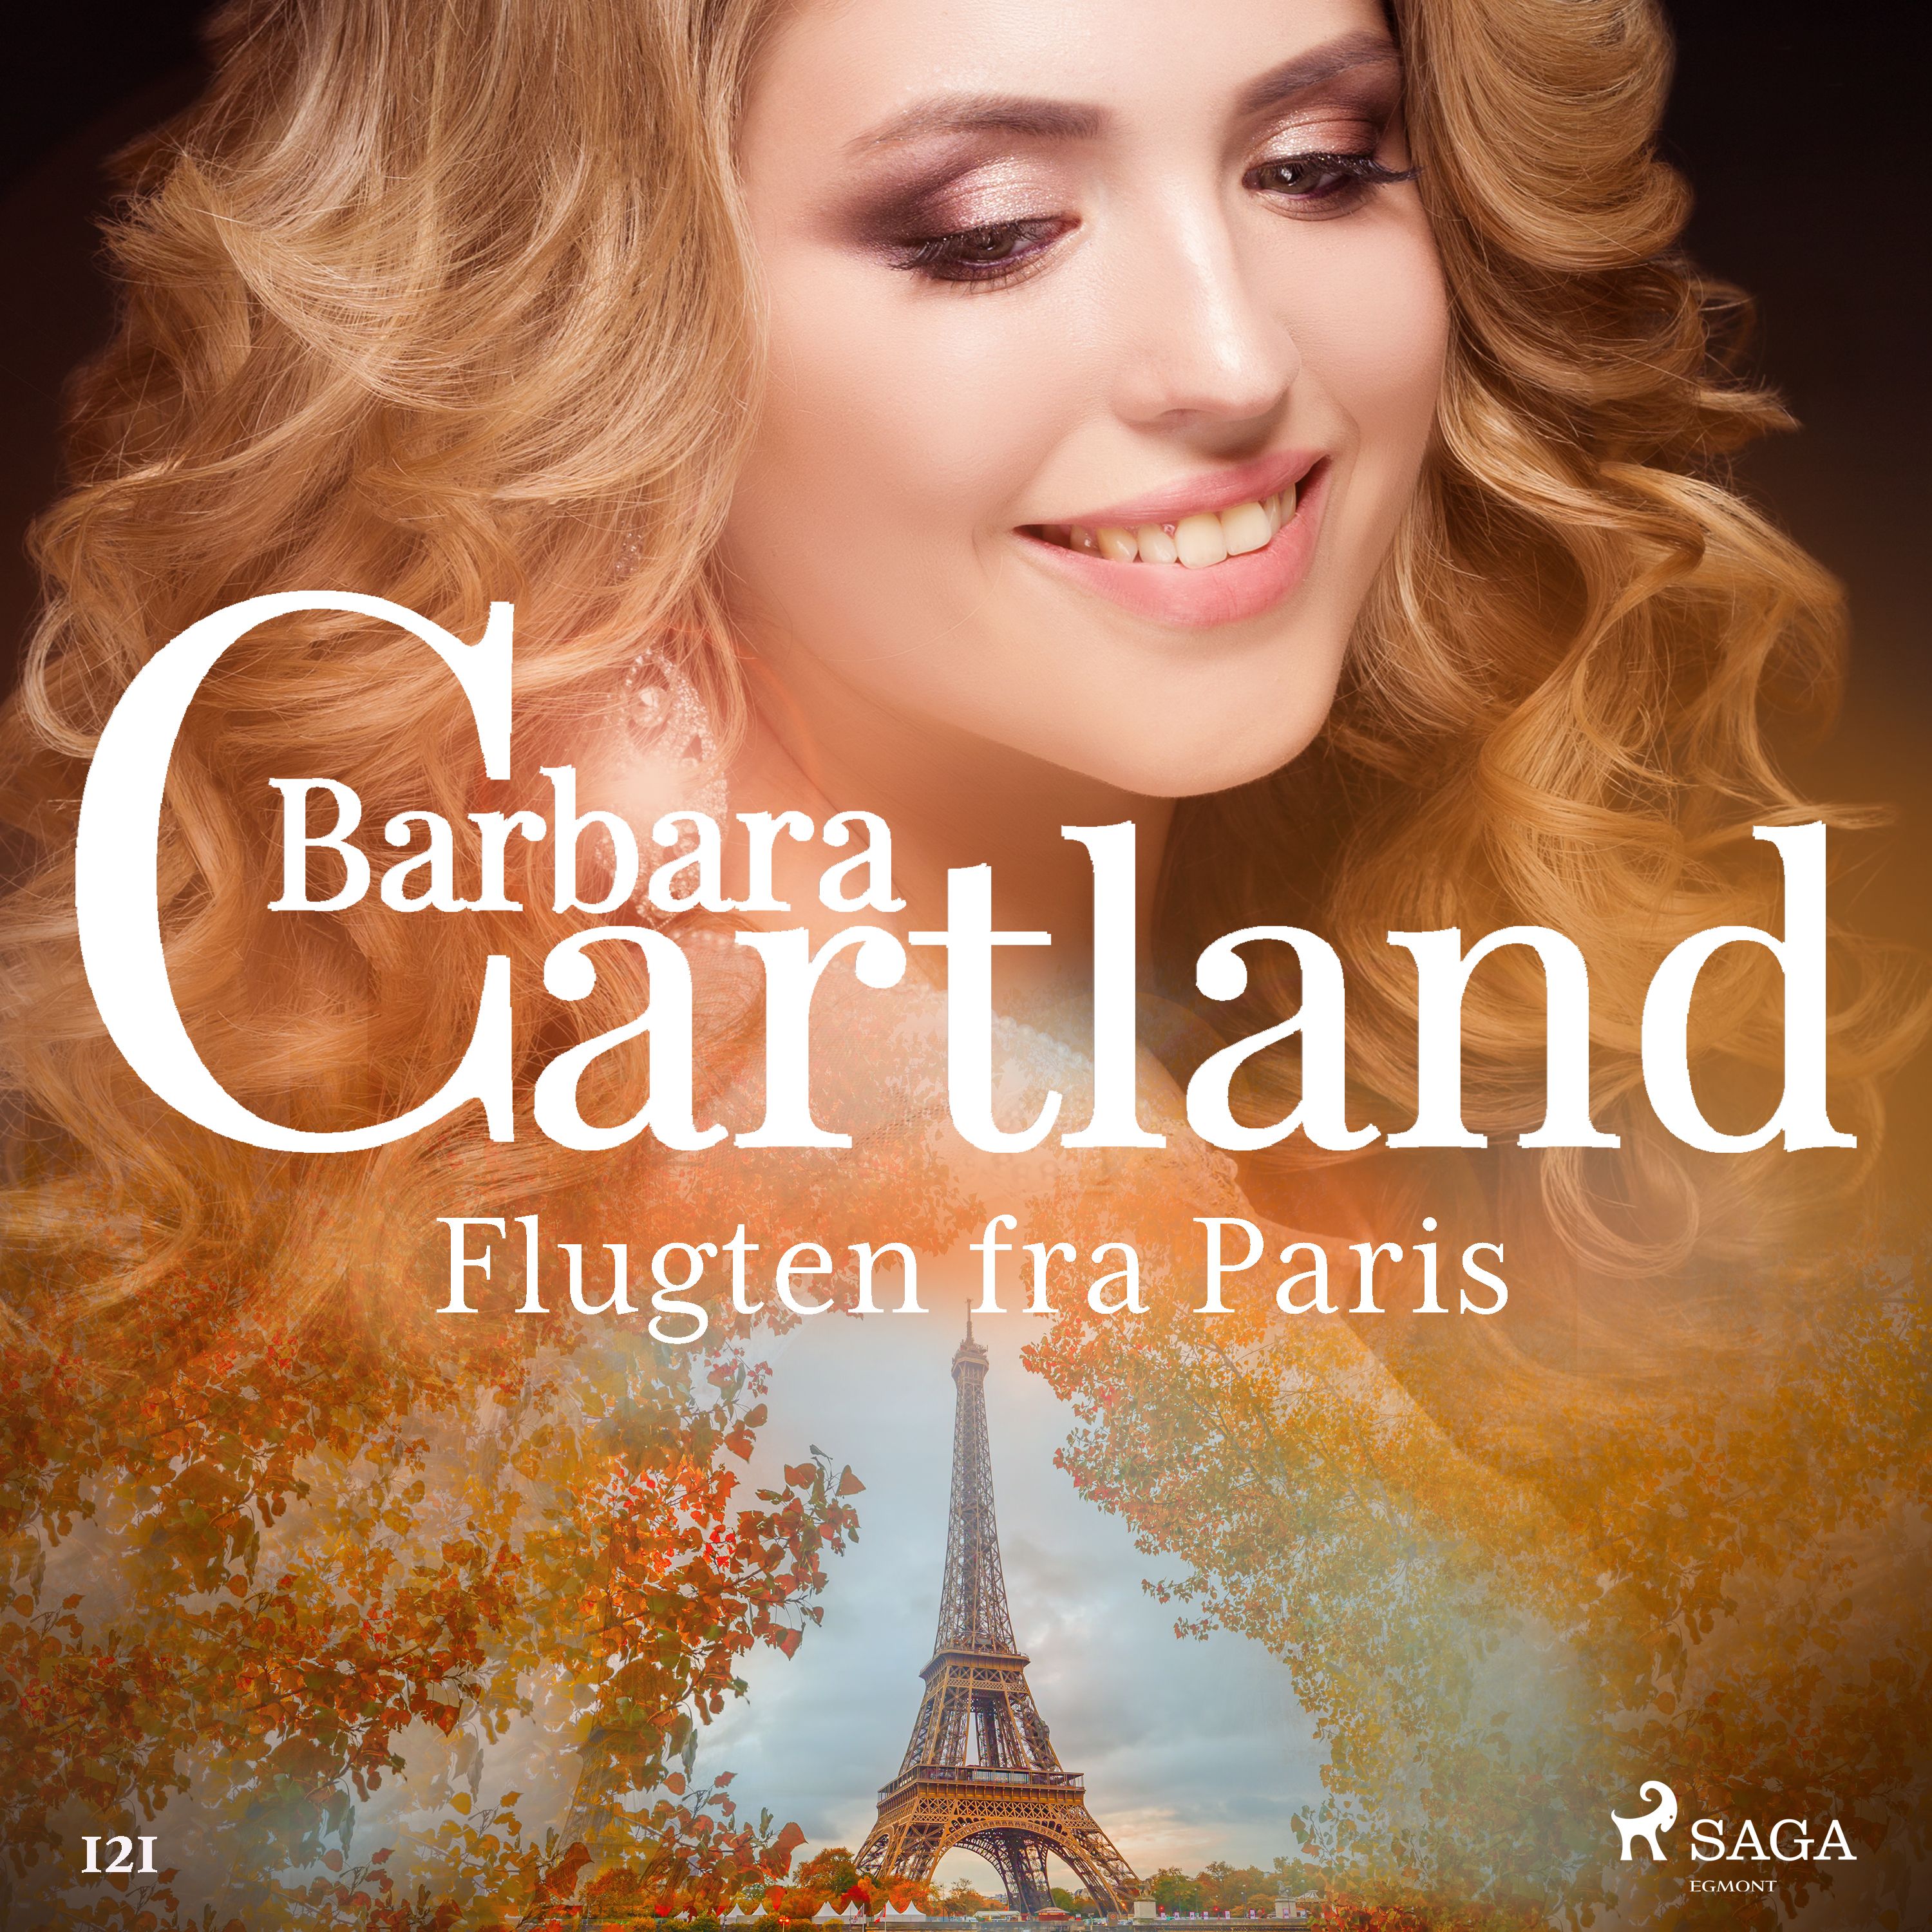 Flugten fra Paris, lydbog af Barbara Cartland